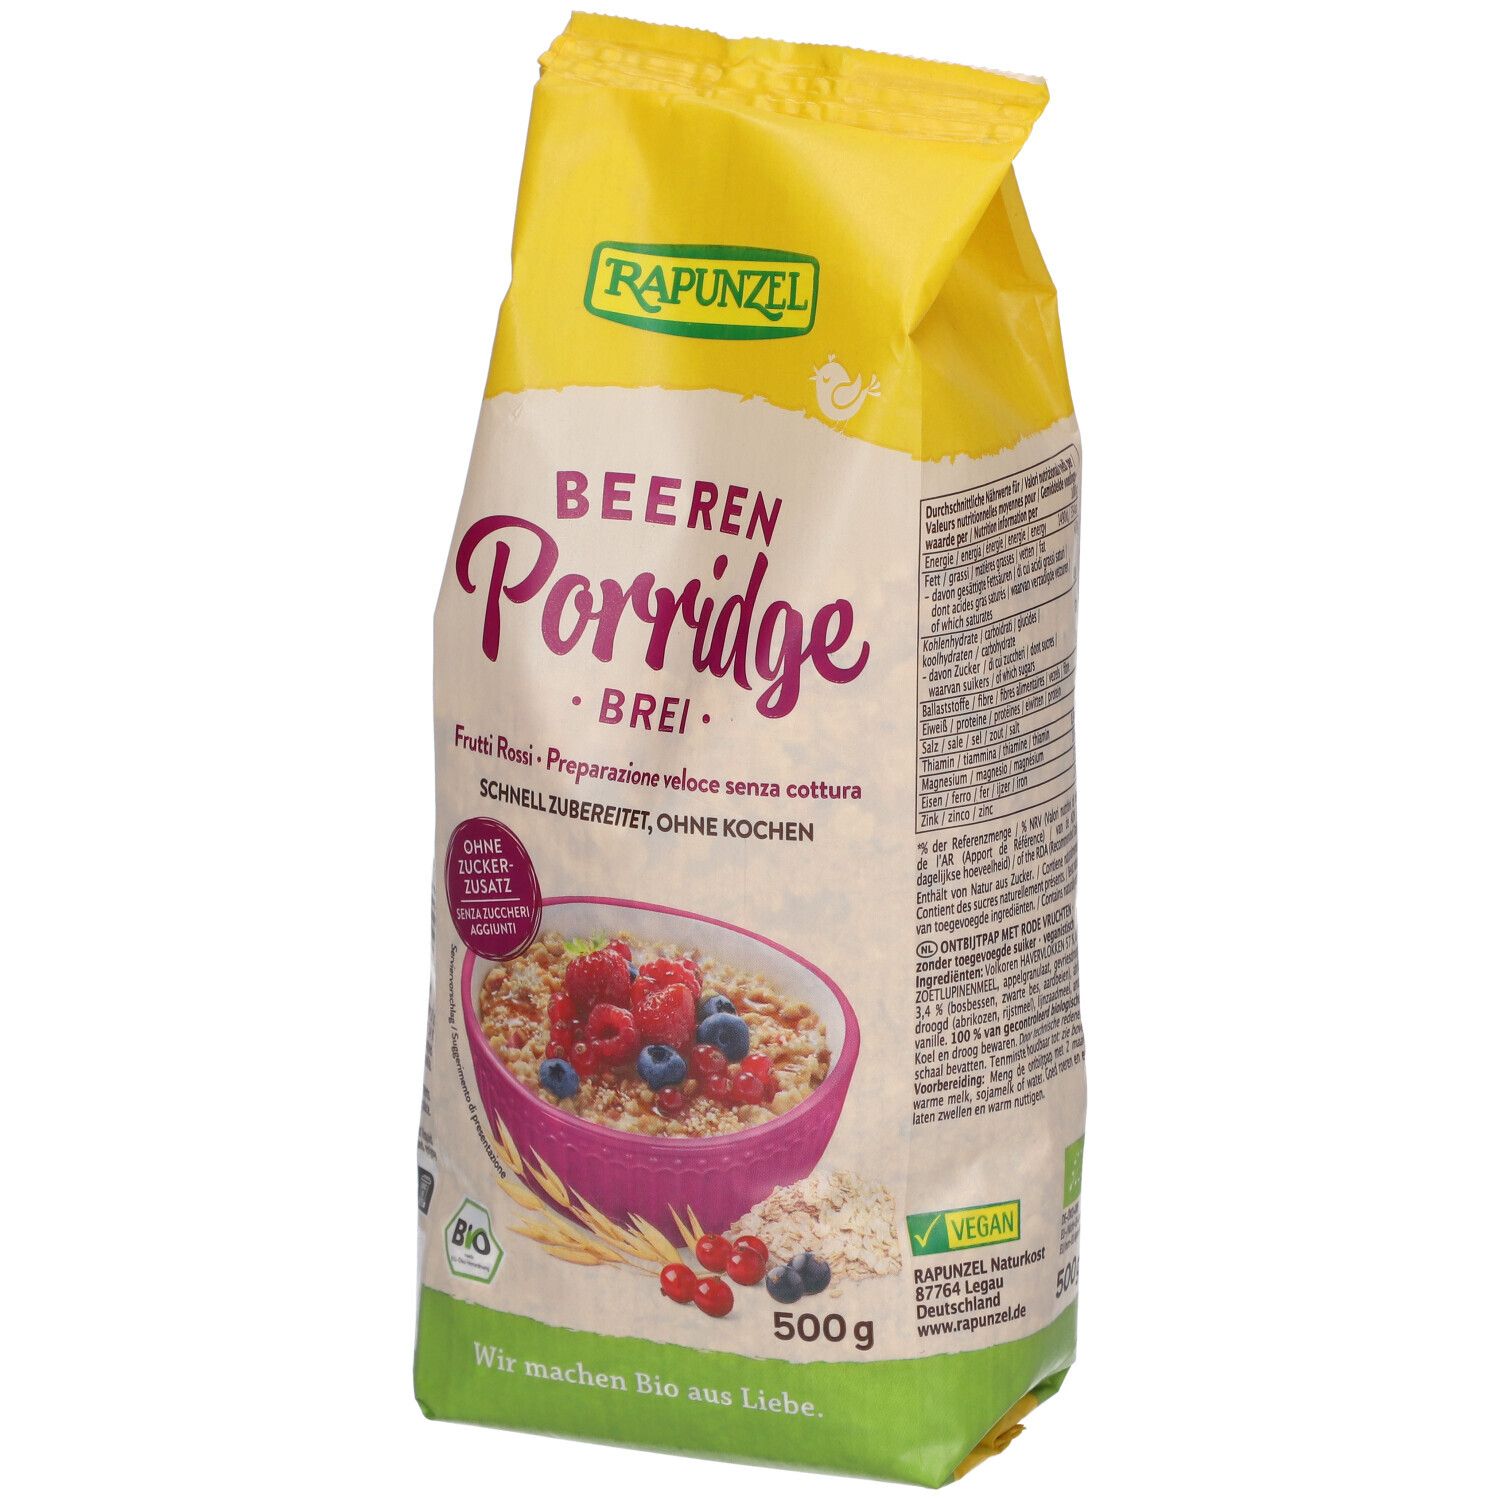 Rapunzel Beeren Porridge